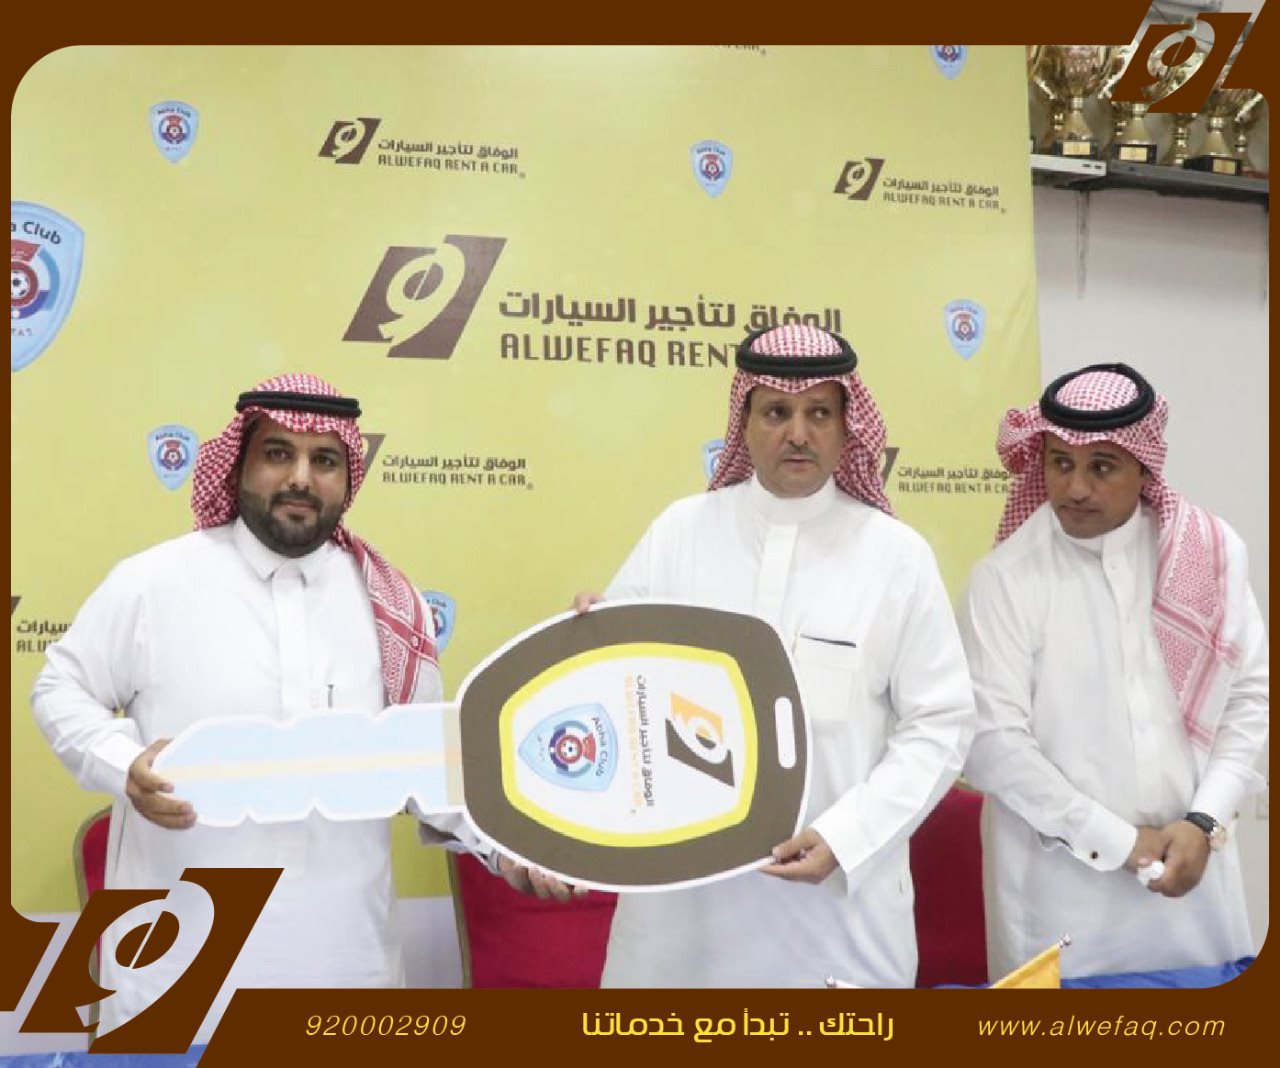 الوفاق لتأجير السيارات راعيًا رسمياً لنادي أبها 2